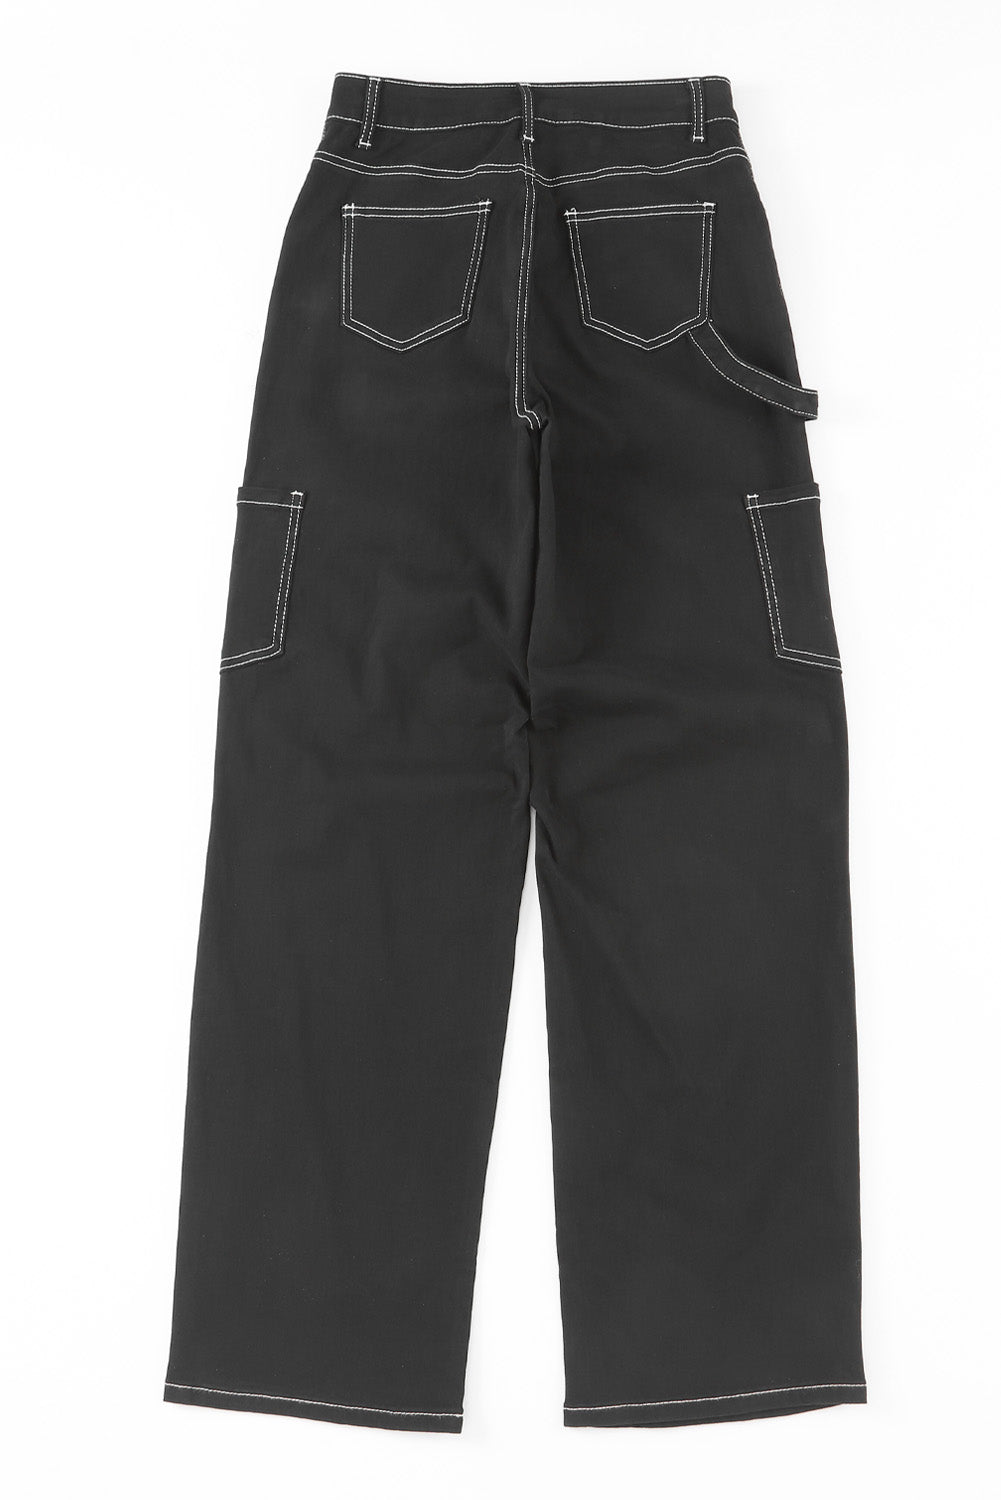 Schwarze Cargohose mit hohem Bund und geradem Bein und Taschen